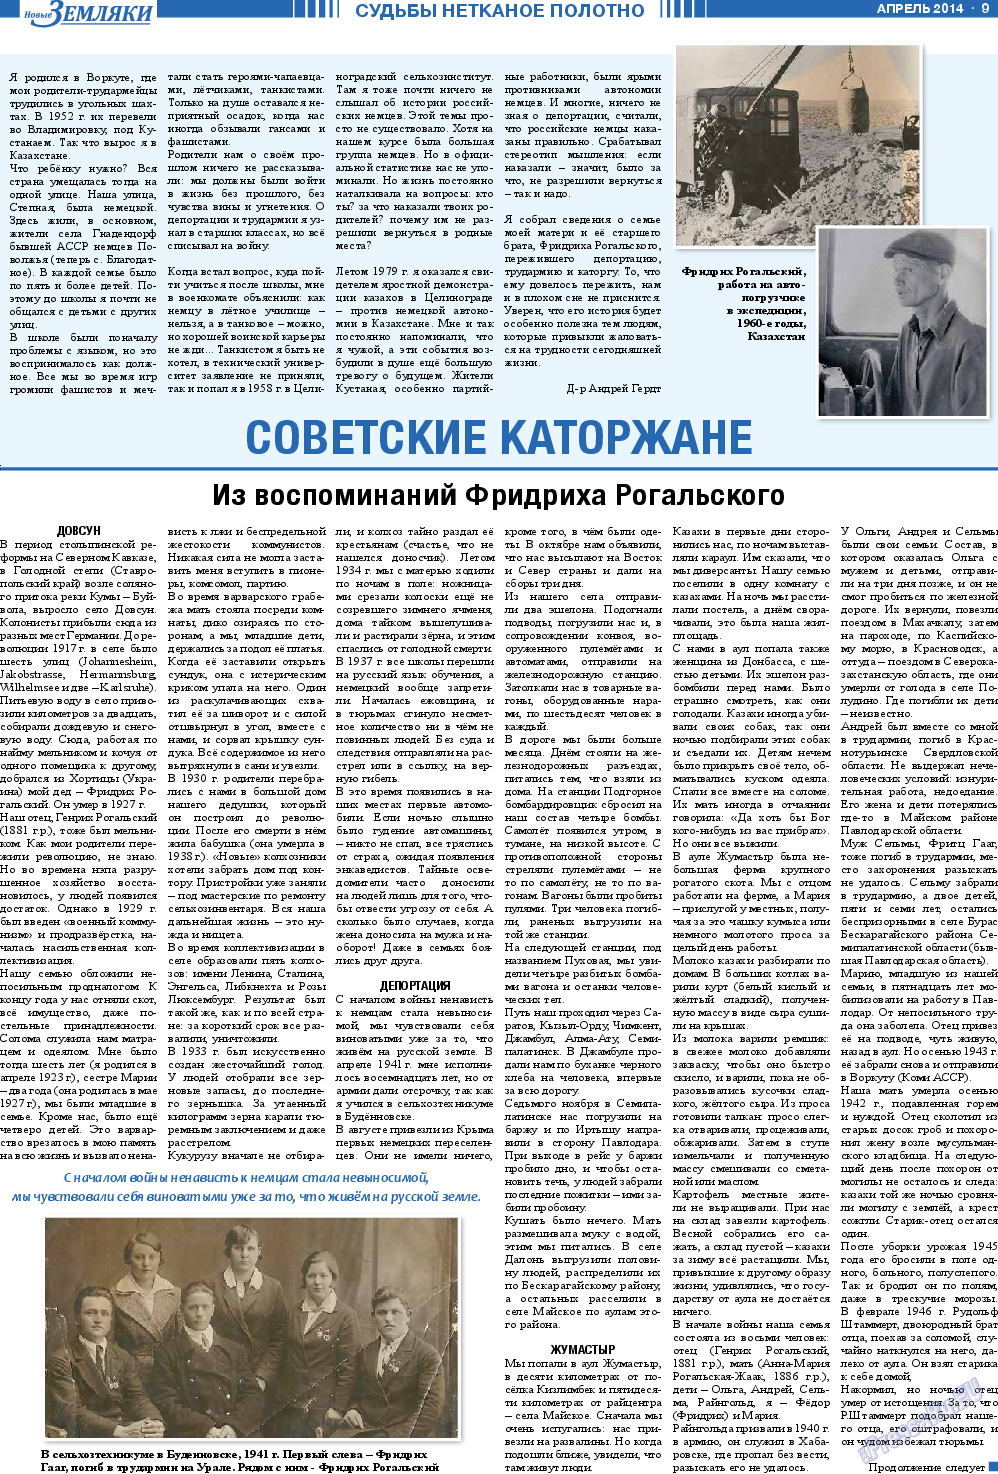 Новые Земляки, газета. 2014 №4 стр.9